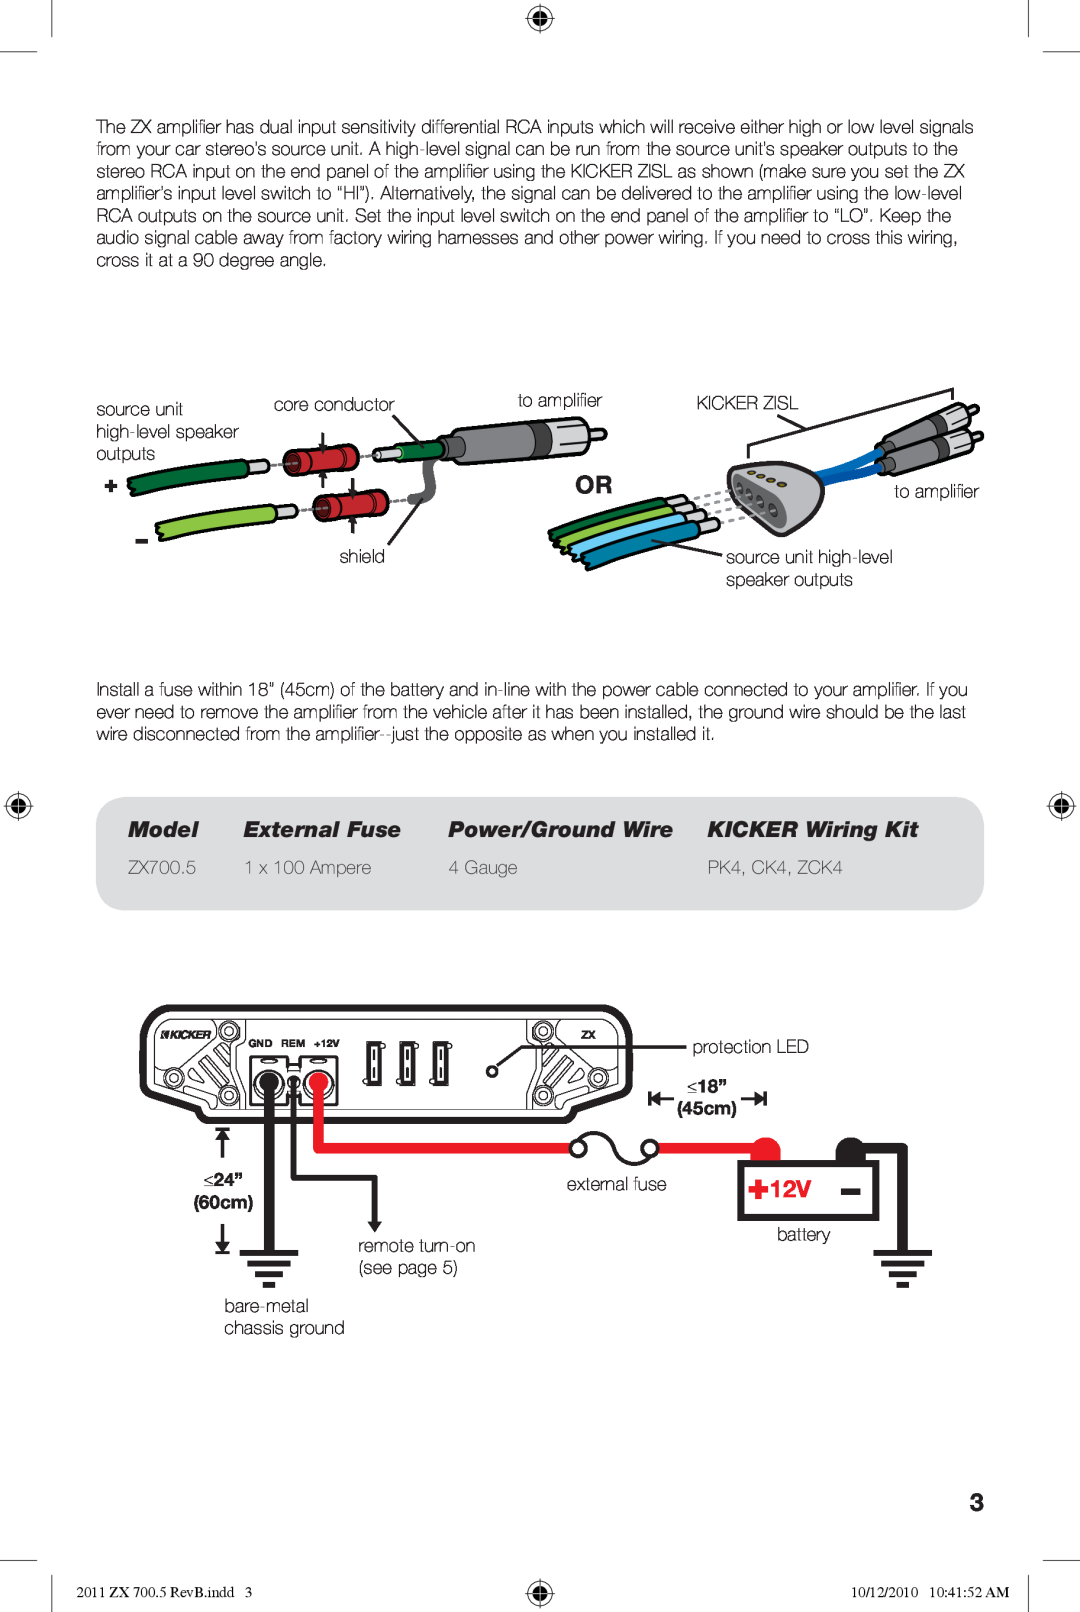 Kicker ZX700.5 manual Model, External Fuse, Power/Ground Wire, KICKER Wiring Kit 